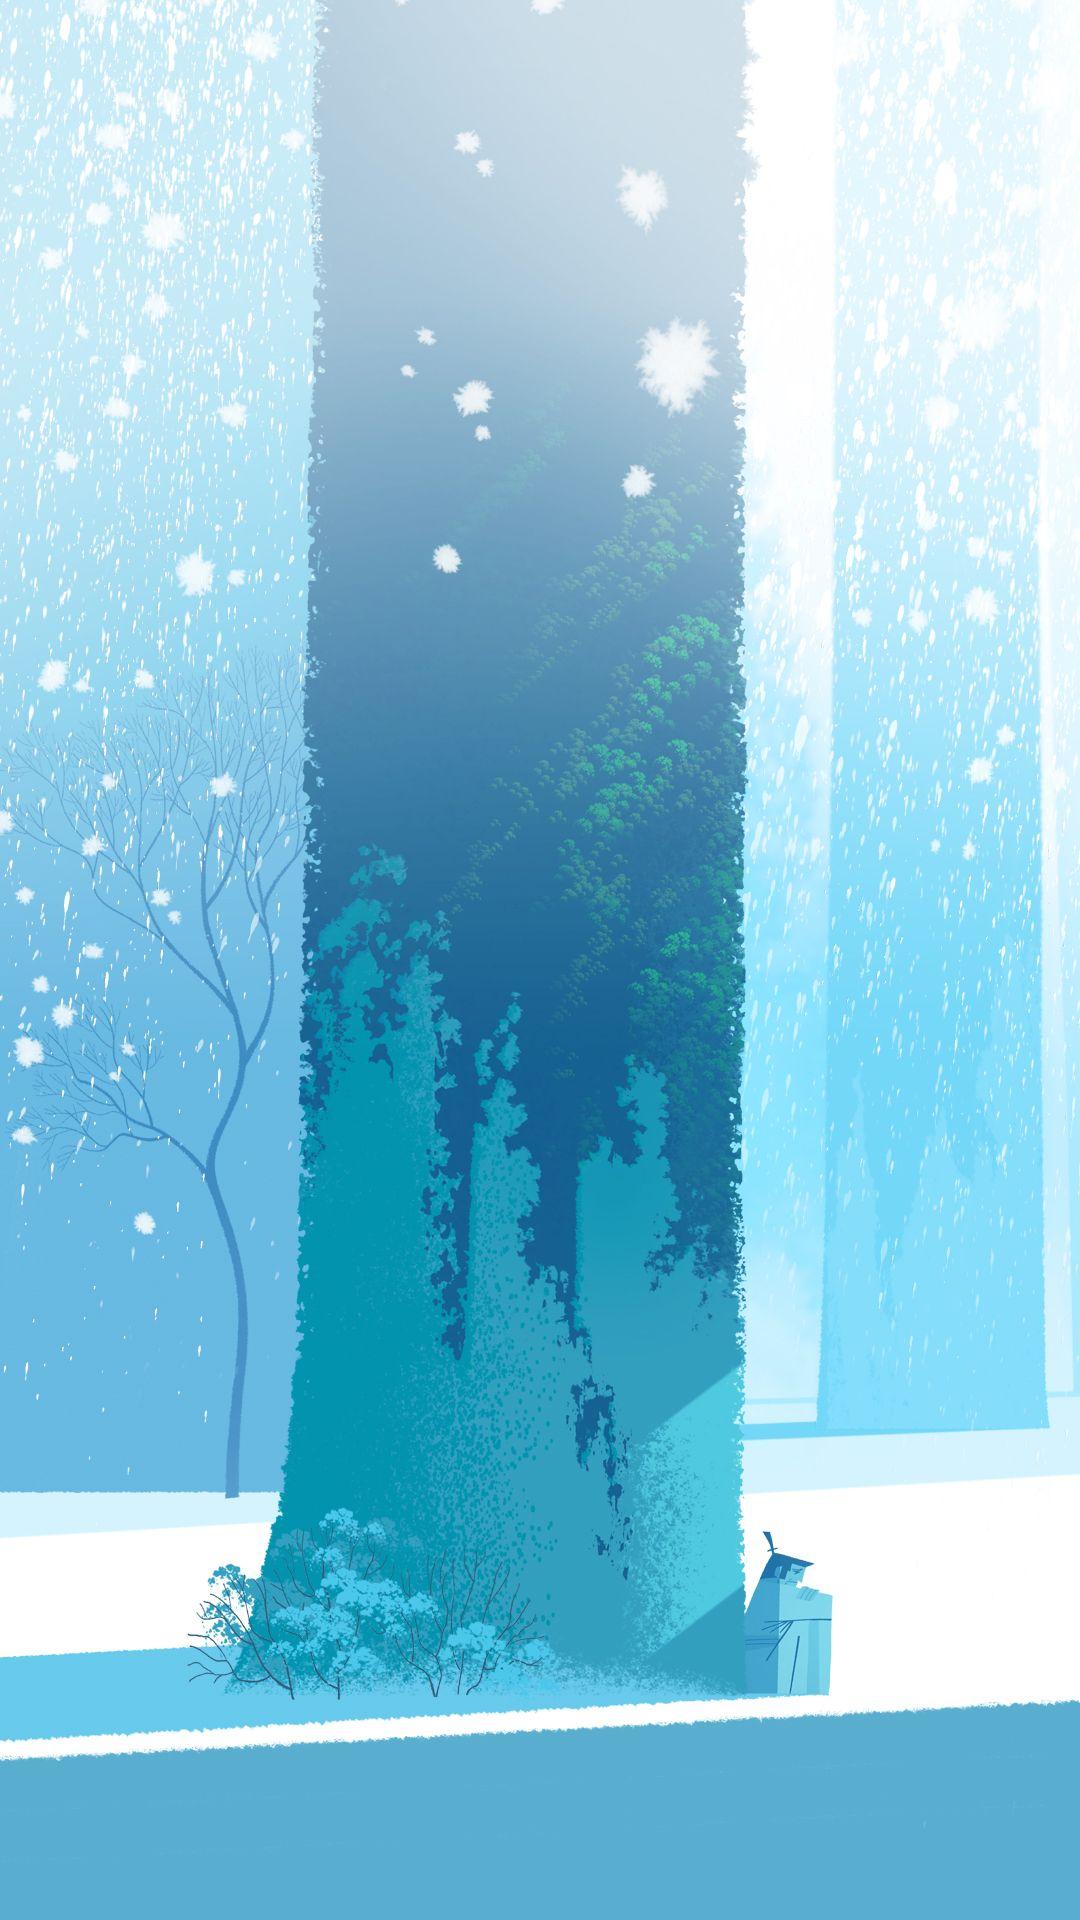 Samurai Snow Wallpapers - Top Free Samurai Snow Backgrounds ...